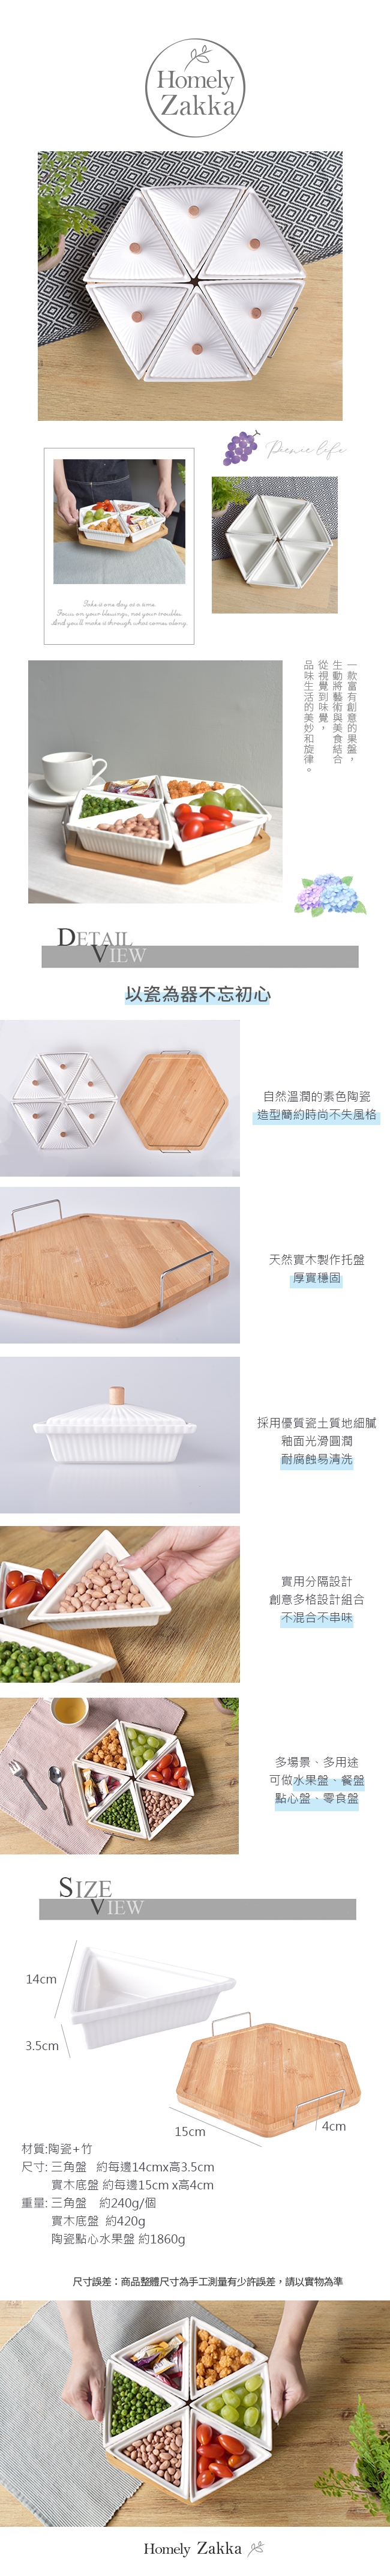 【Homely Zakka】創意簡約陶瓷點心水果盤/乾果盤/零食盤